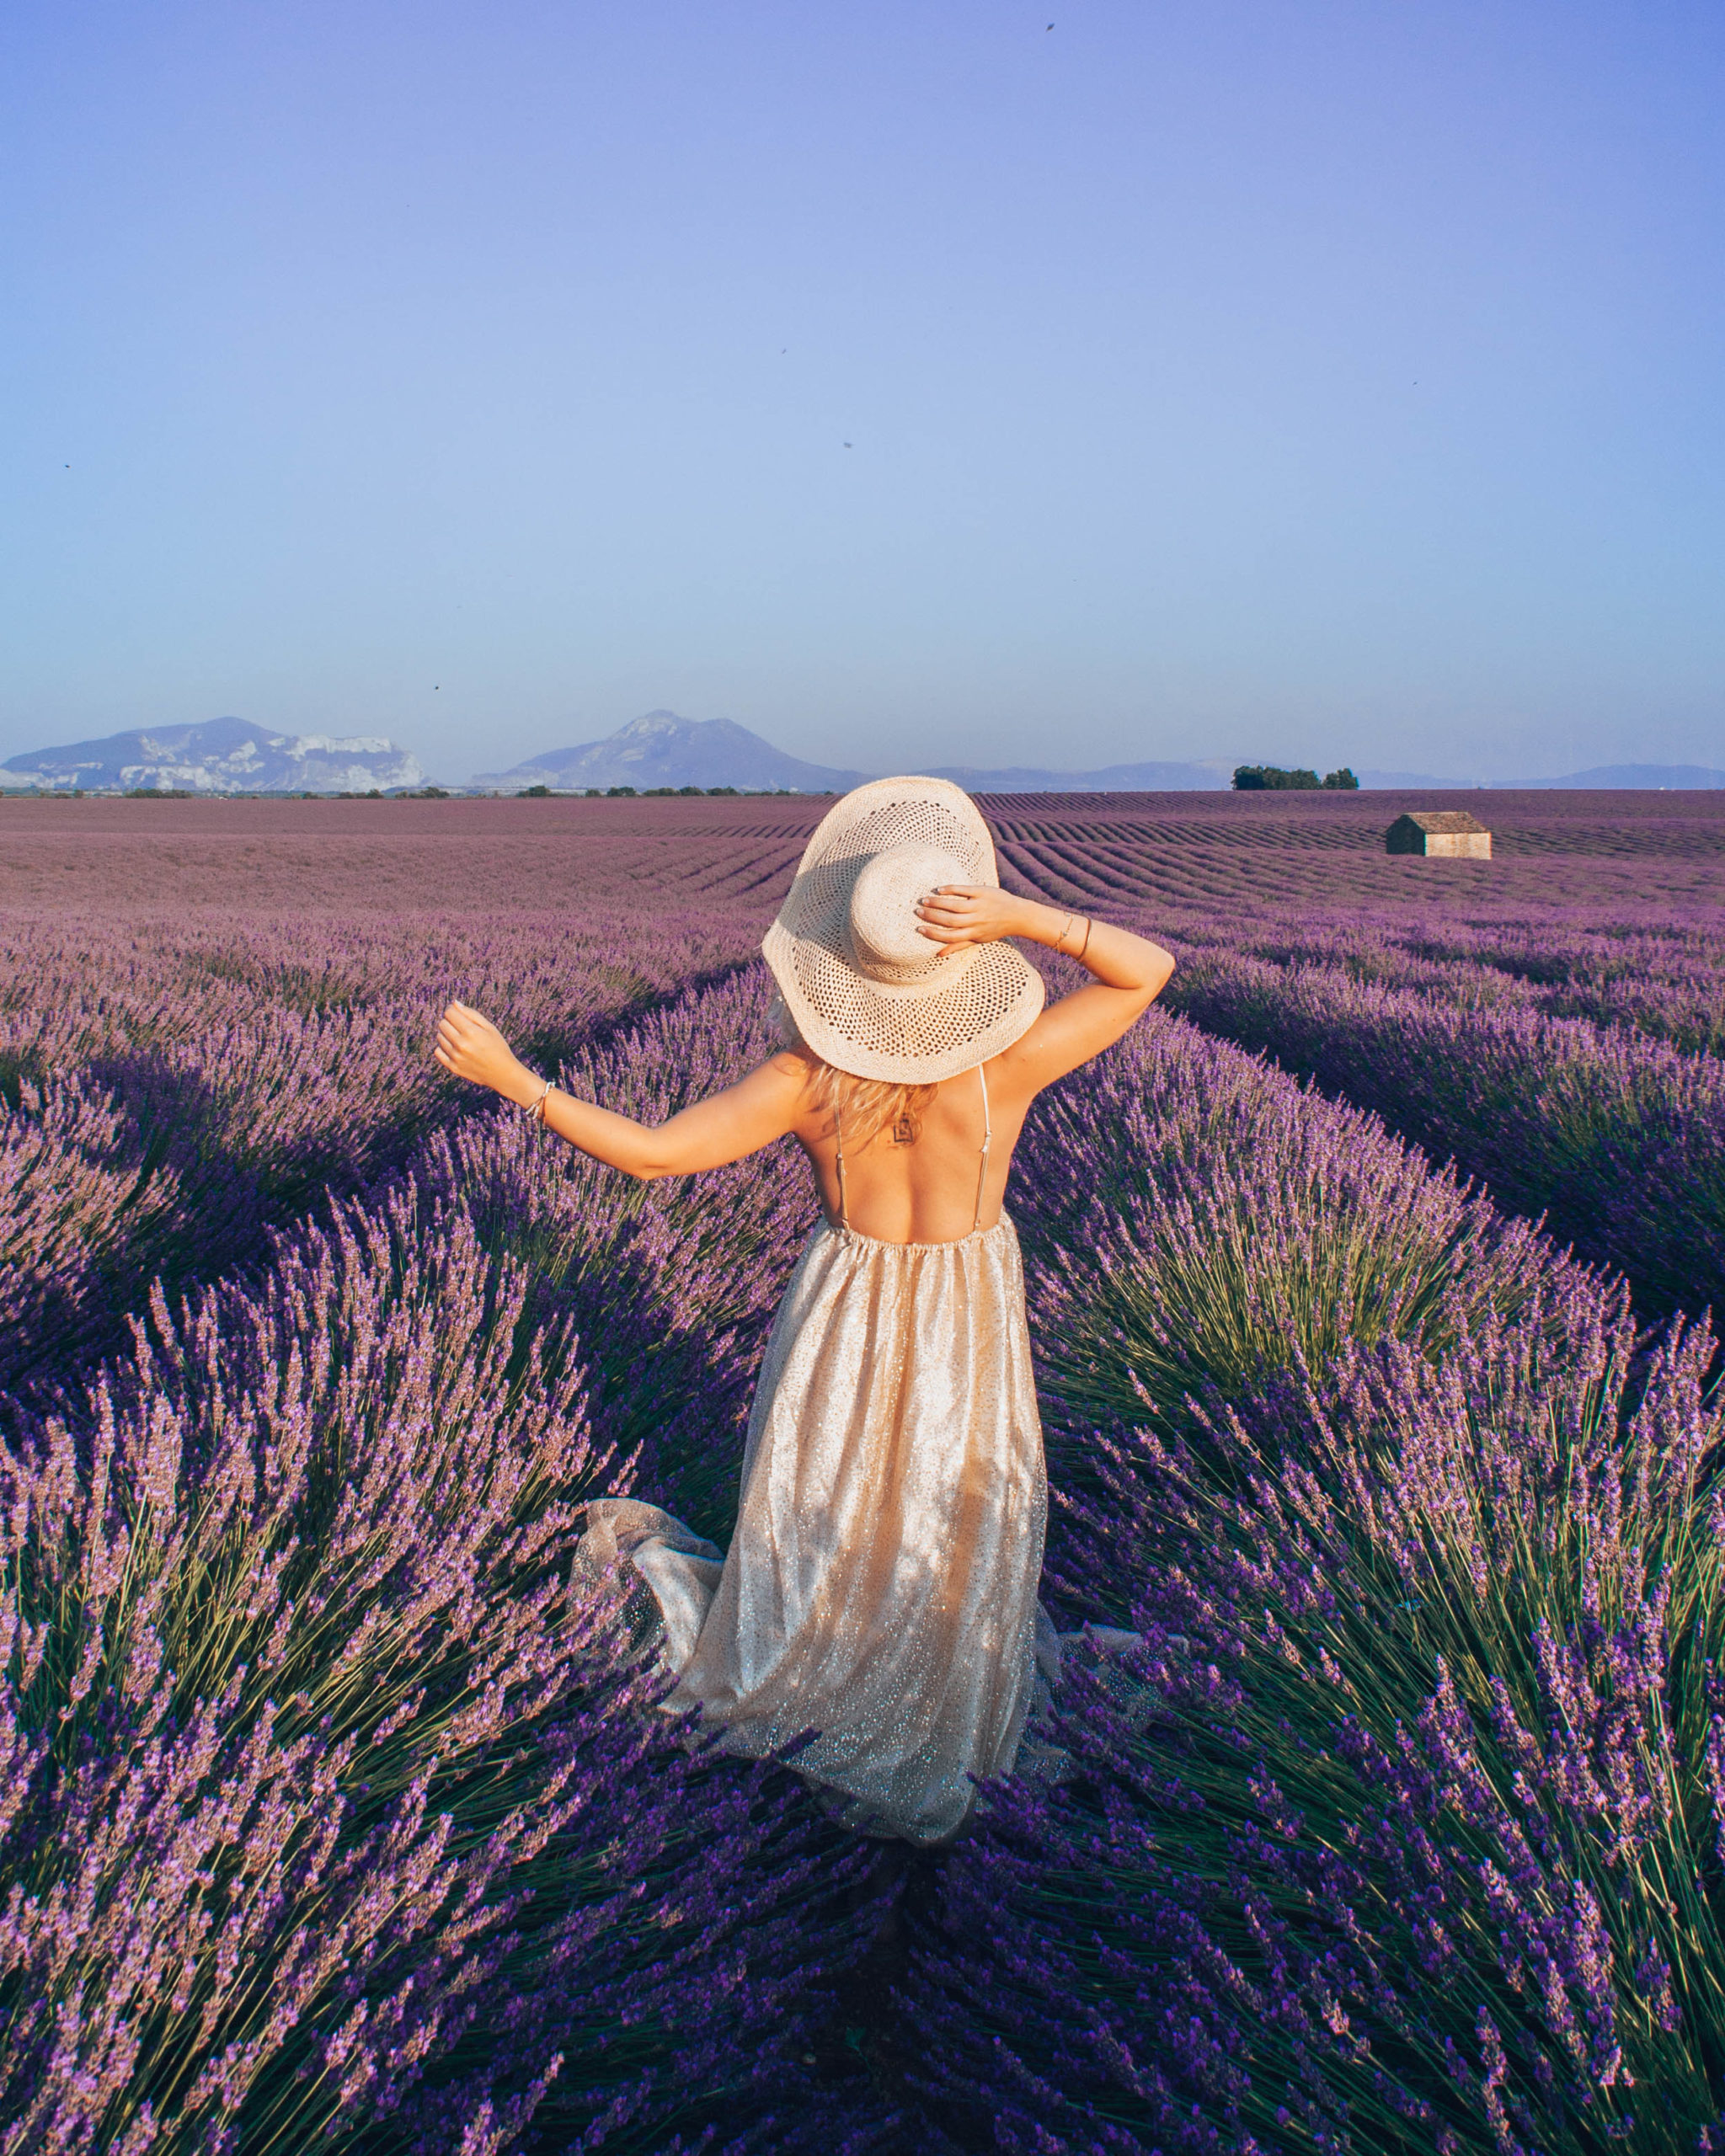 Khung cảnh đồng hoa oải hương tại Provence cực kỳ tuyệt đẹp và hút mắt. Nếu bạn yêu thích vẻ đẹp thiên nhiên tinh khiết, hãy xem bức ảnh tuyệt đẹp này liền thôi!